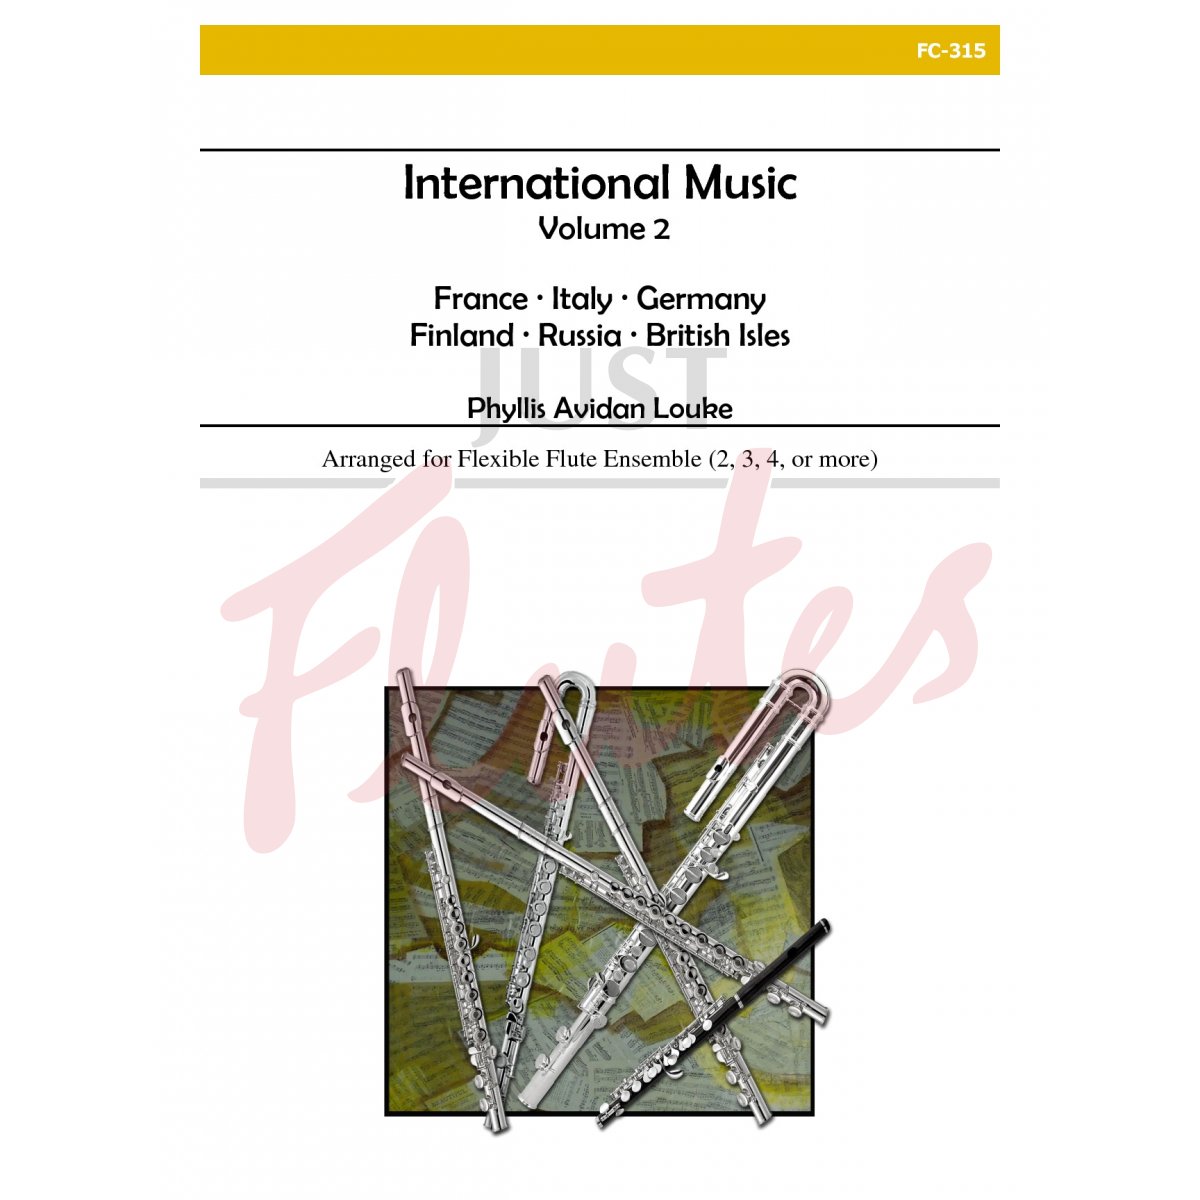 International Music for Flexible Flute Ensemble